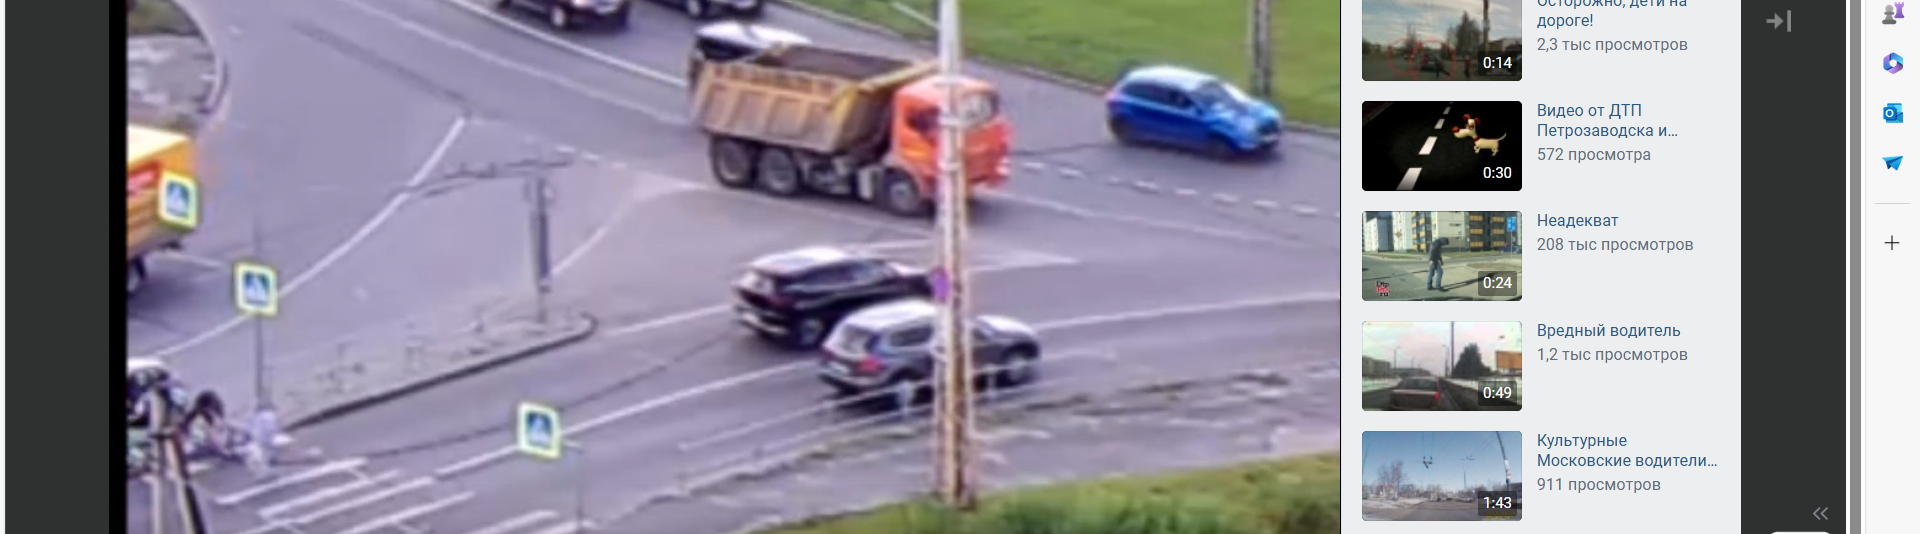 Авто влетело в пешеходов на кольце в крупном районе Петрозаводска